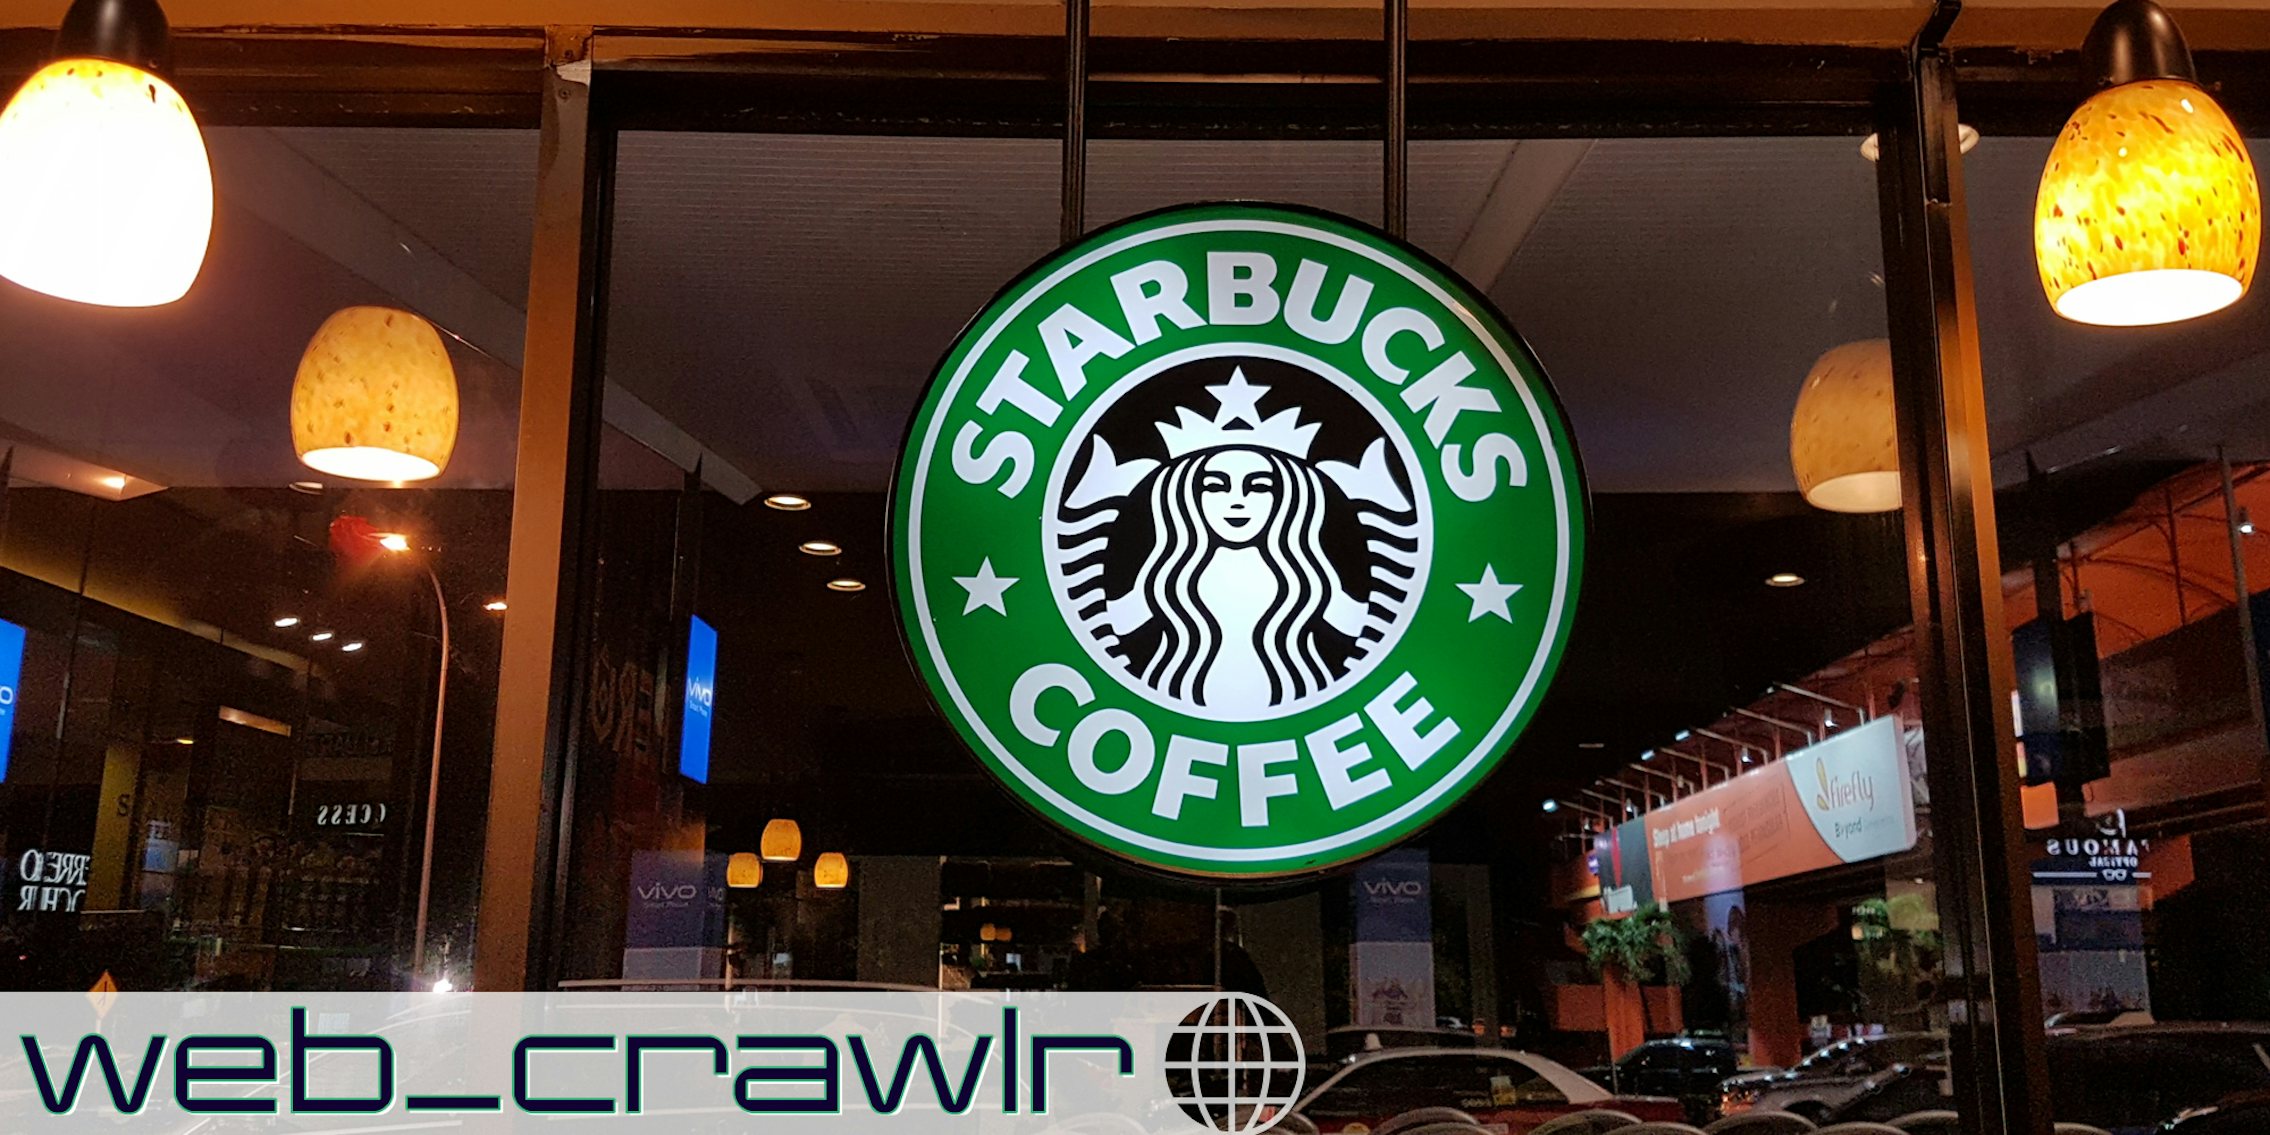 A Starbucks sign. The Daily Dot newsletter web_crawlr logo is in the bottom left corner.